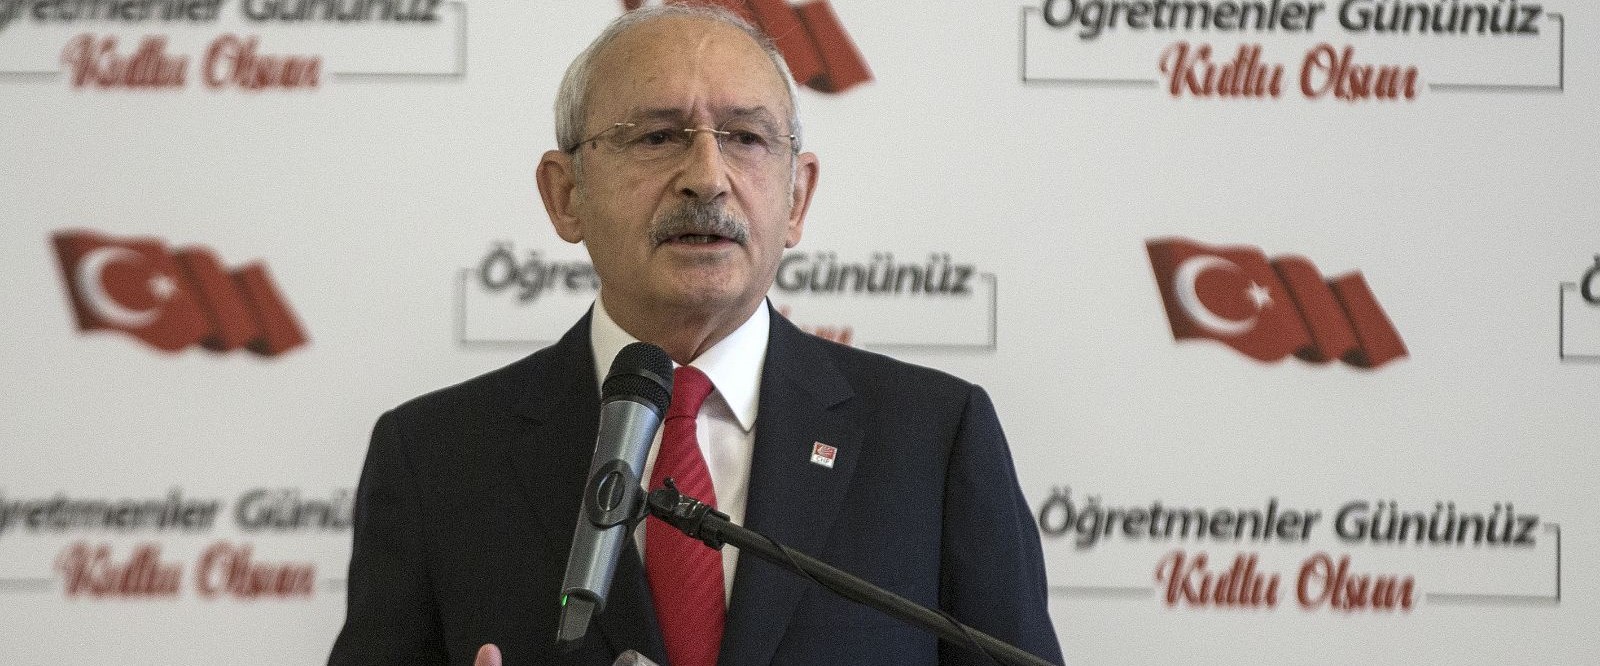 Kılıçdaroğlu: Ögretmenlere 3600 ek gösterge verilmeli